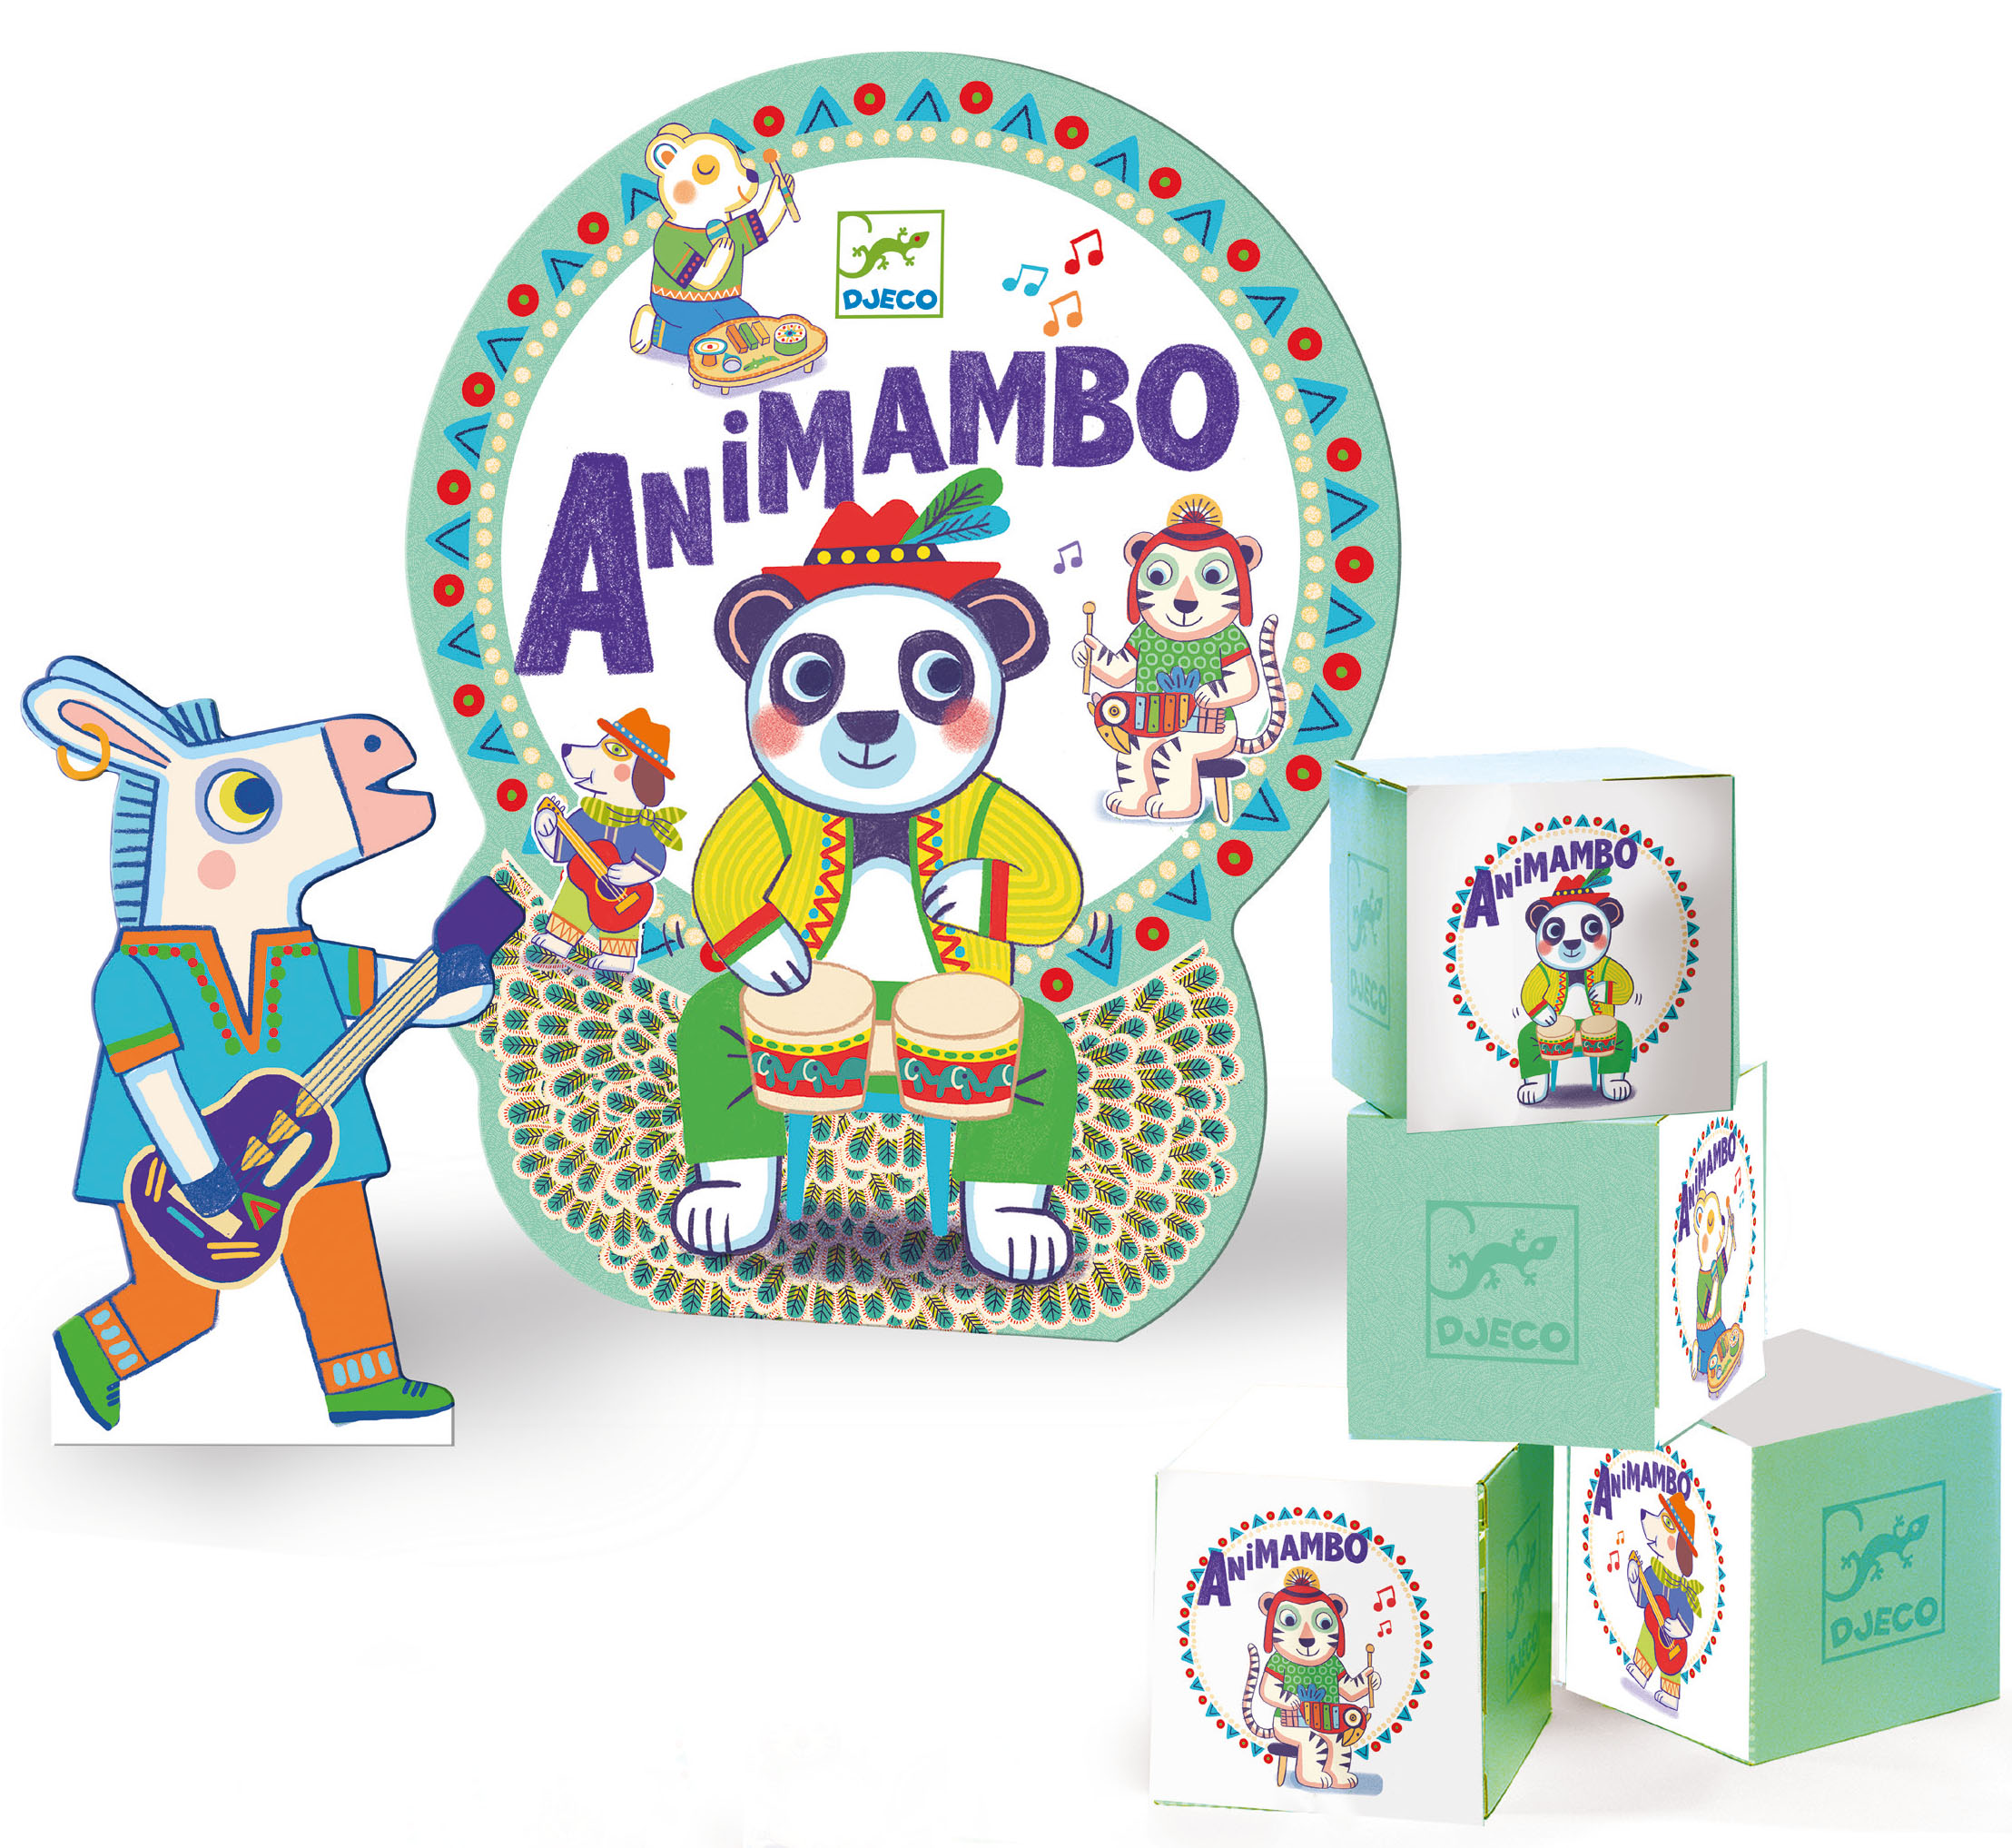 - Djeco - Animambo Wettbewerb 2020